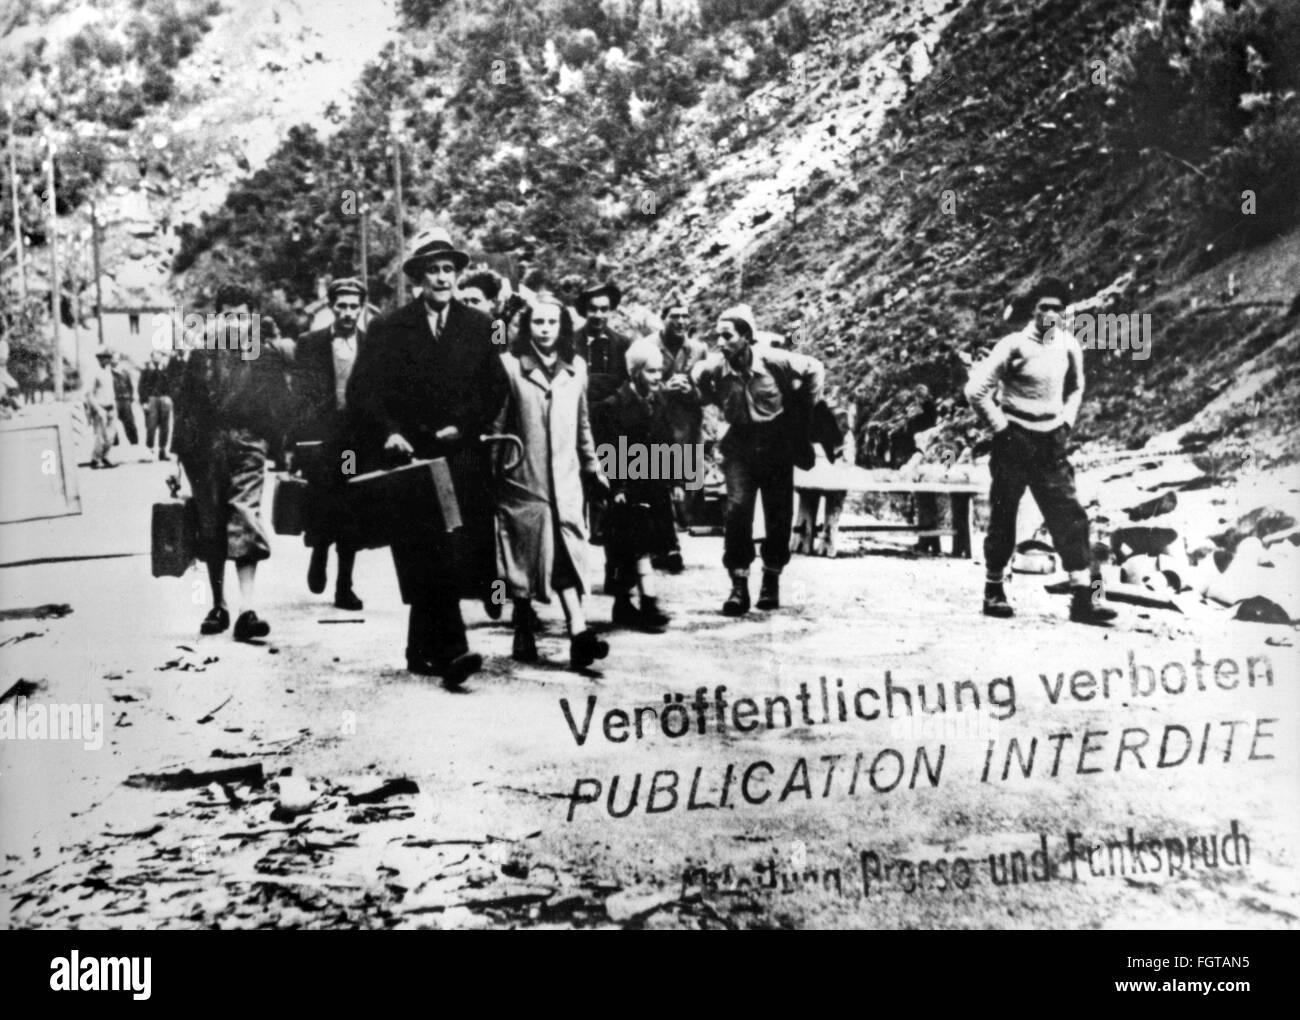 Deuxième Guerre mondiale / Seconde Guerre mondiale, réfugié, un groupe de réfugiés traverse la frontière de l'État suisse, 1941, droits additionnels-Clearences-non disponible Banque D'Images